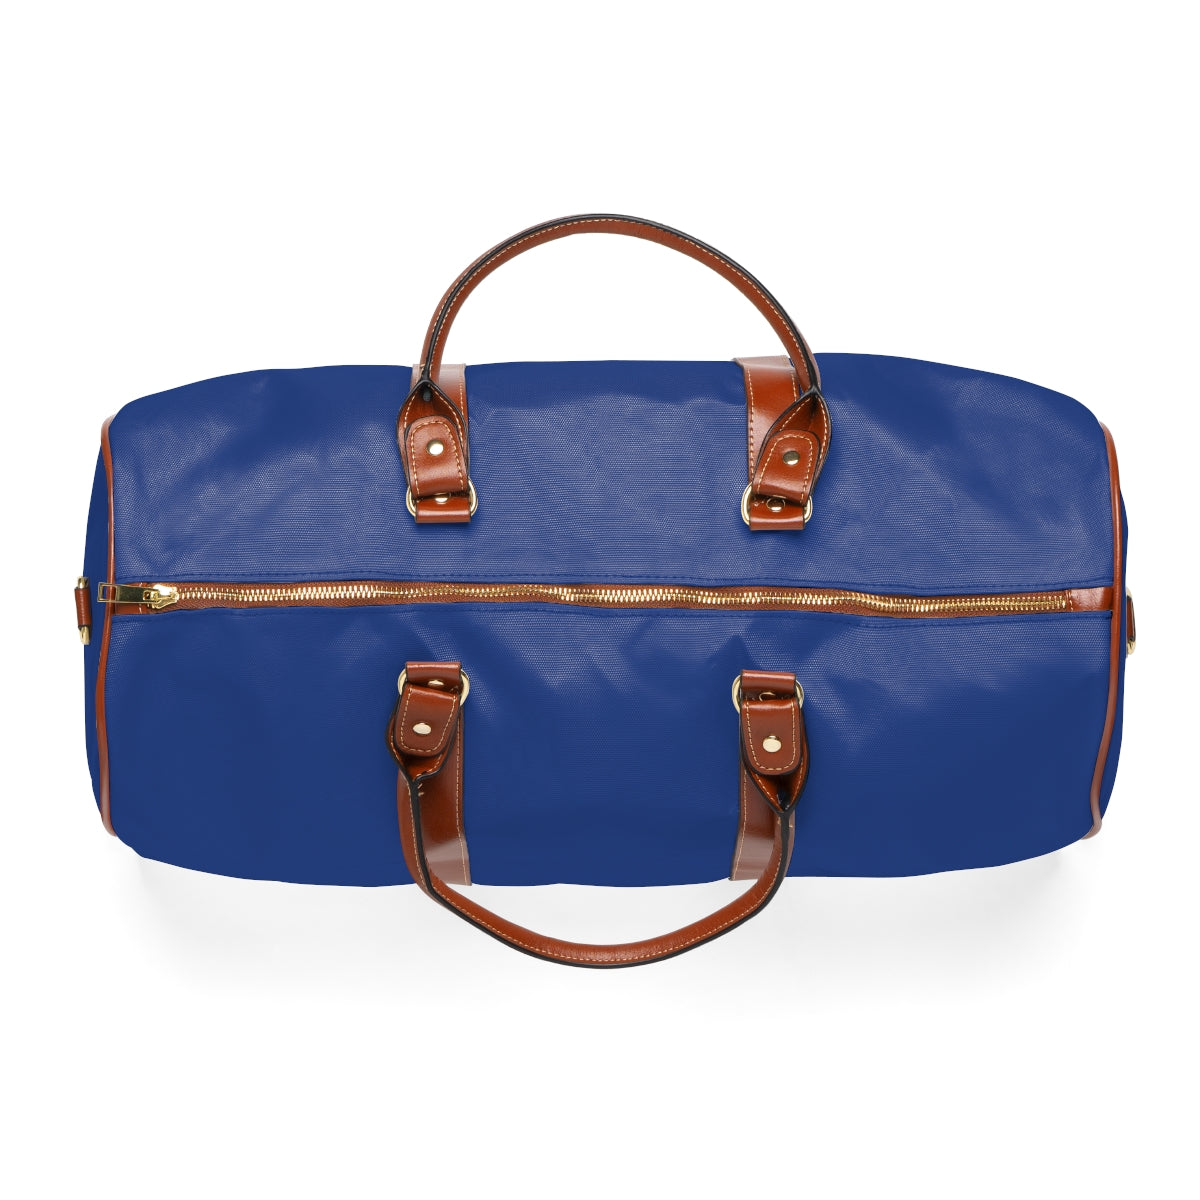 Everton Waterproof Travel Bag - Dark Blue